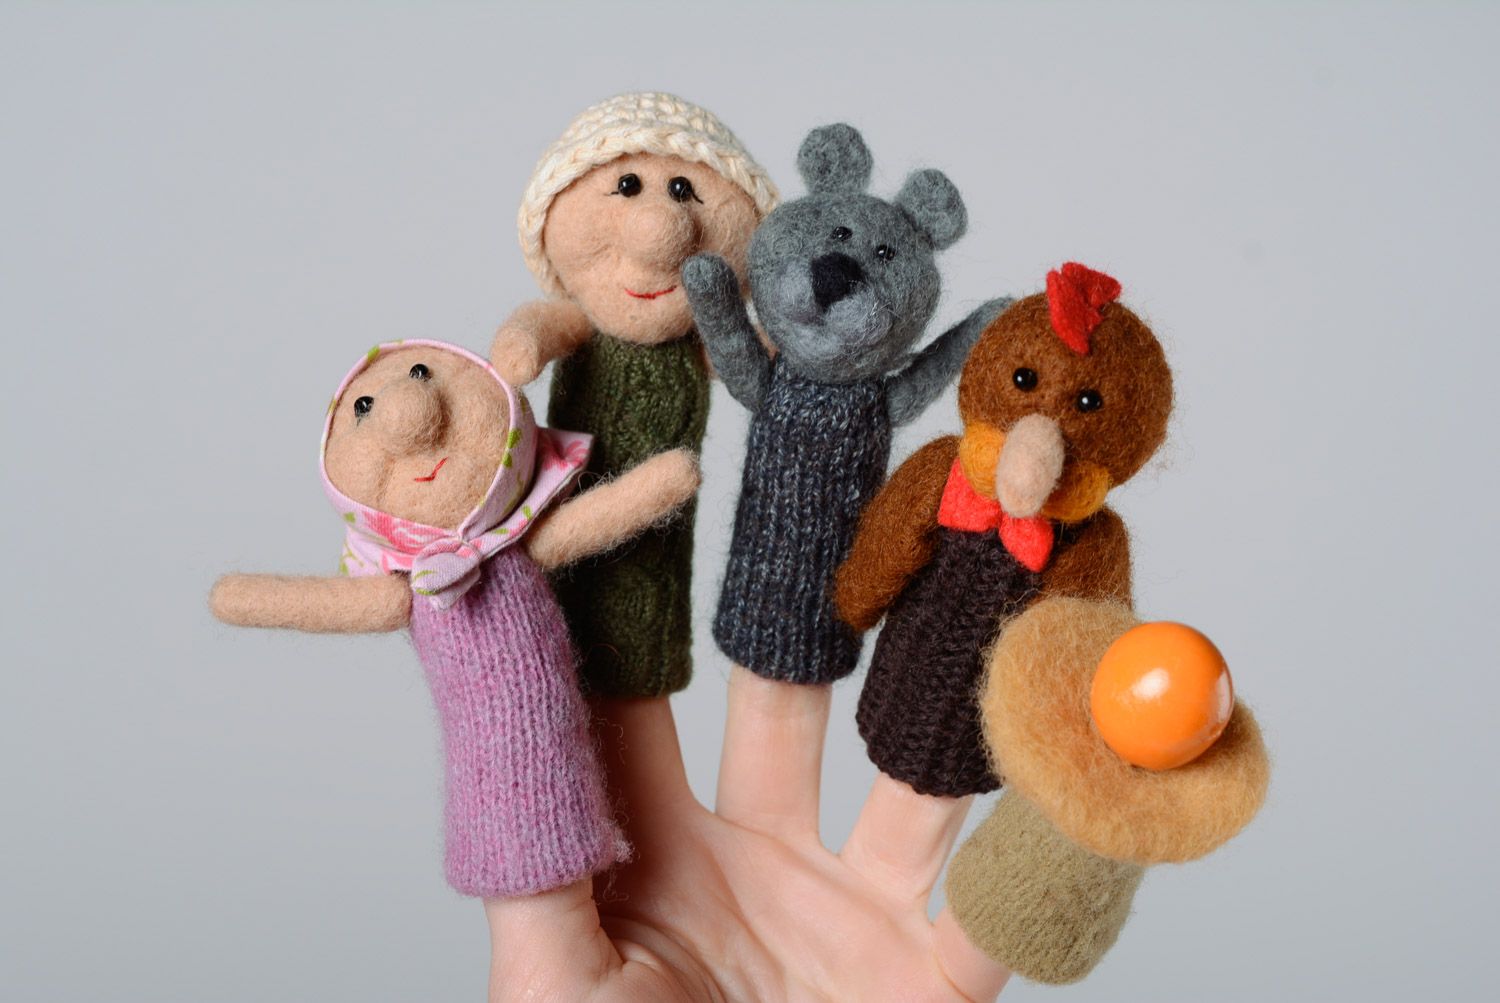 Handmade Finger Theater Set zum Märchen Das Hühnchen Rjaba aus 4 Figuren aus Wolle und 2 Eier foto 2